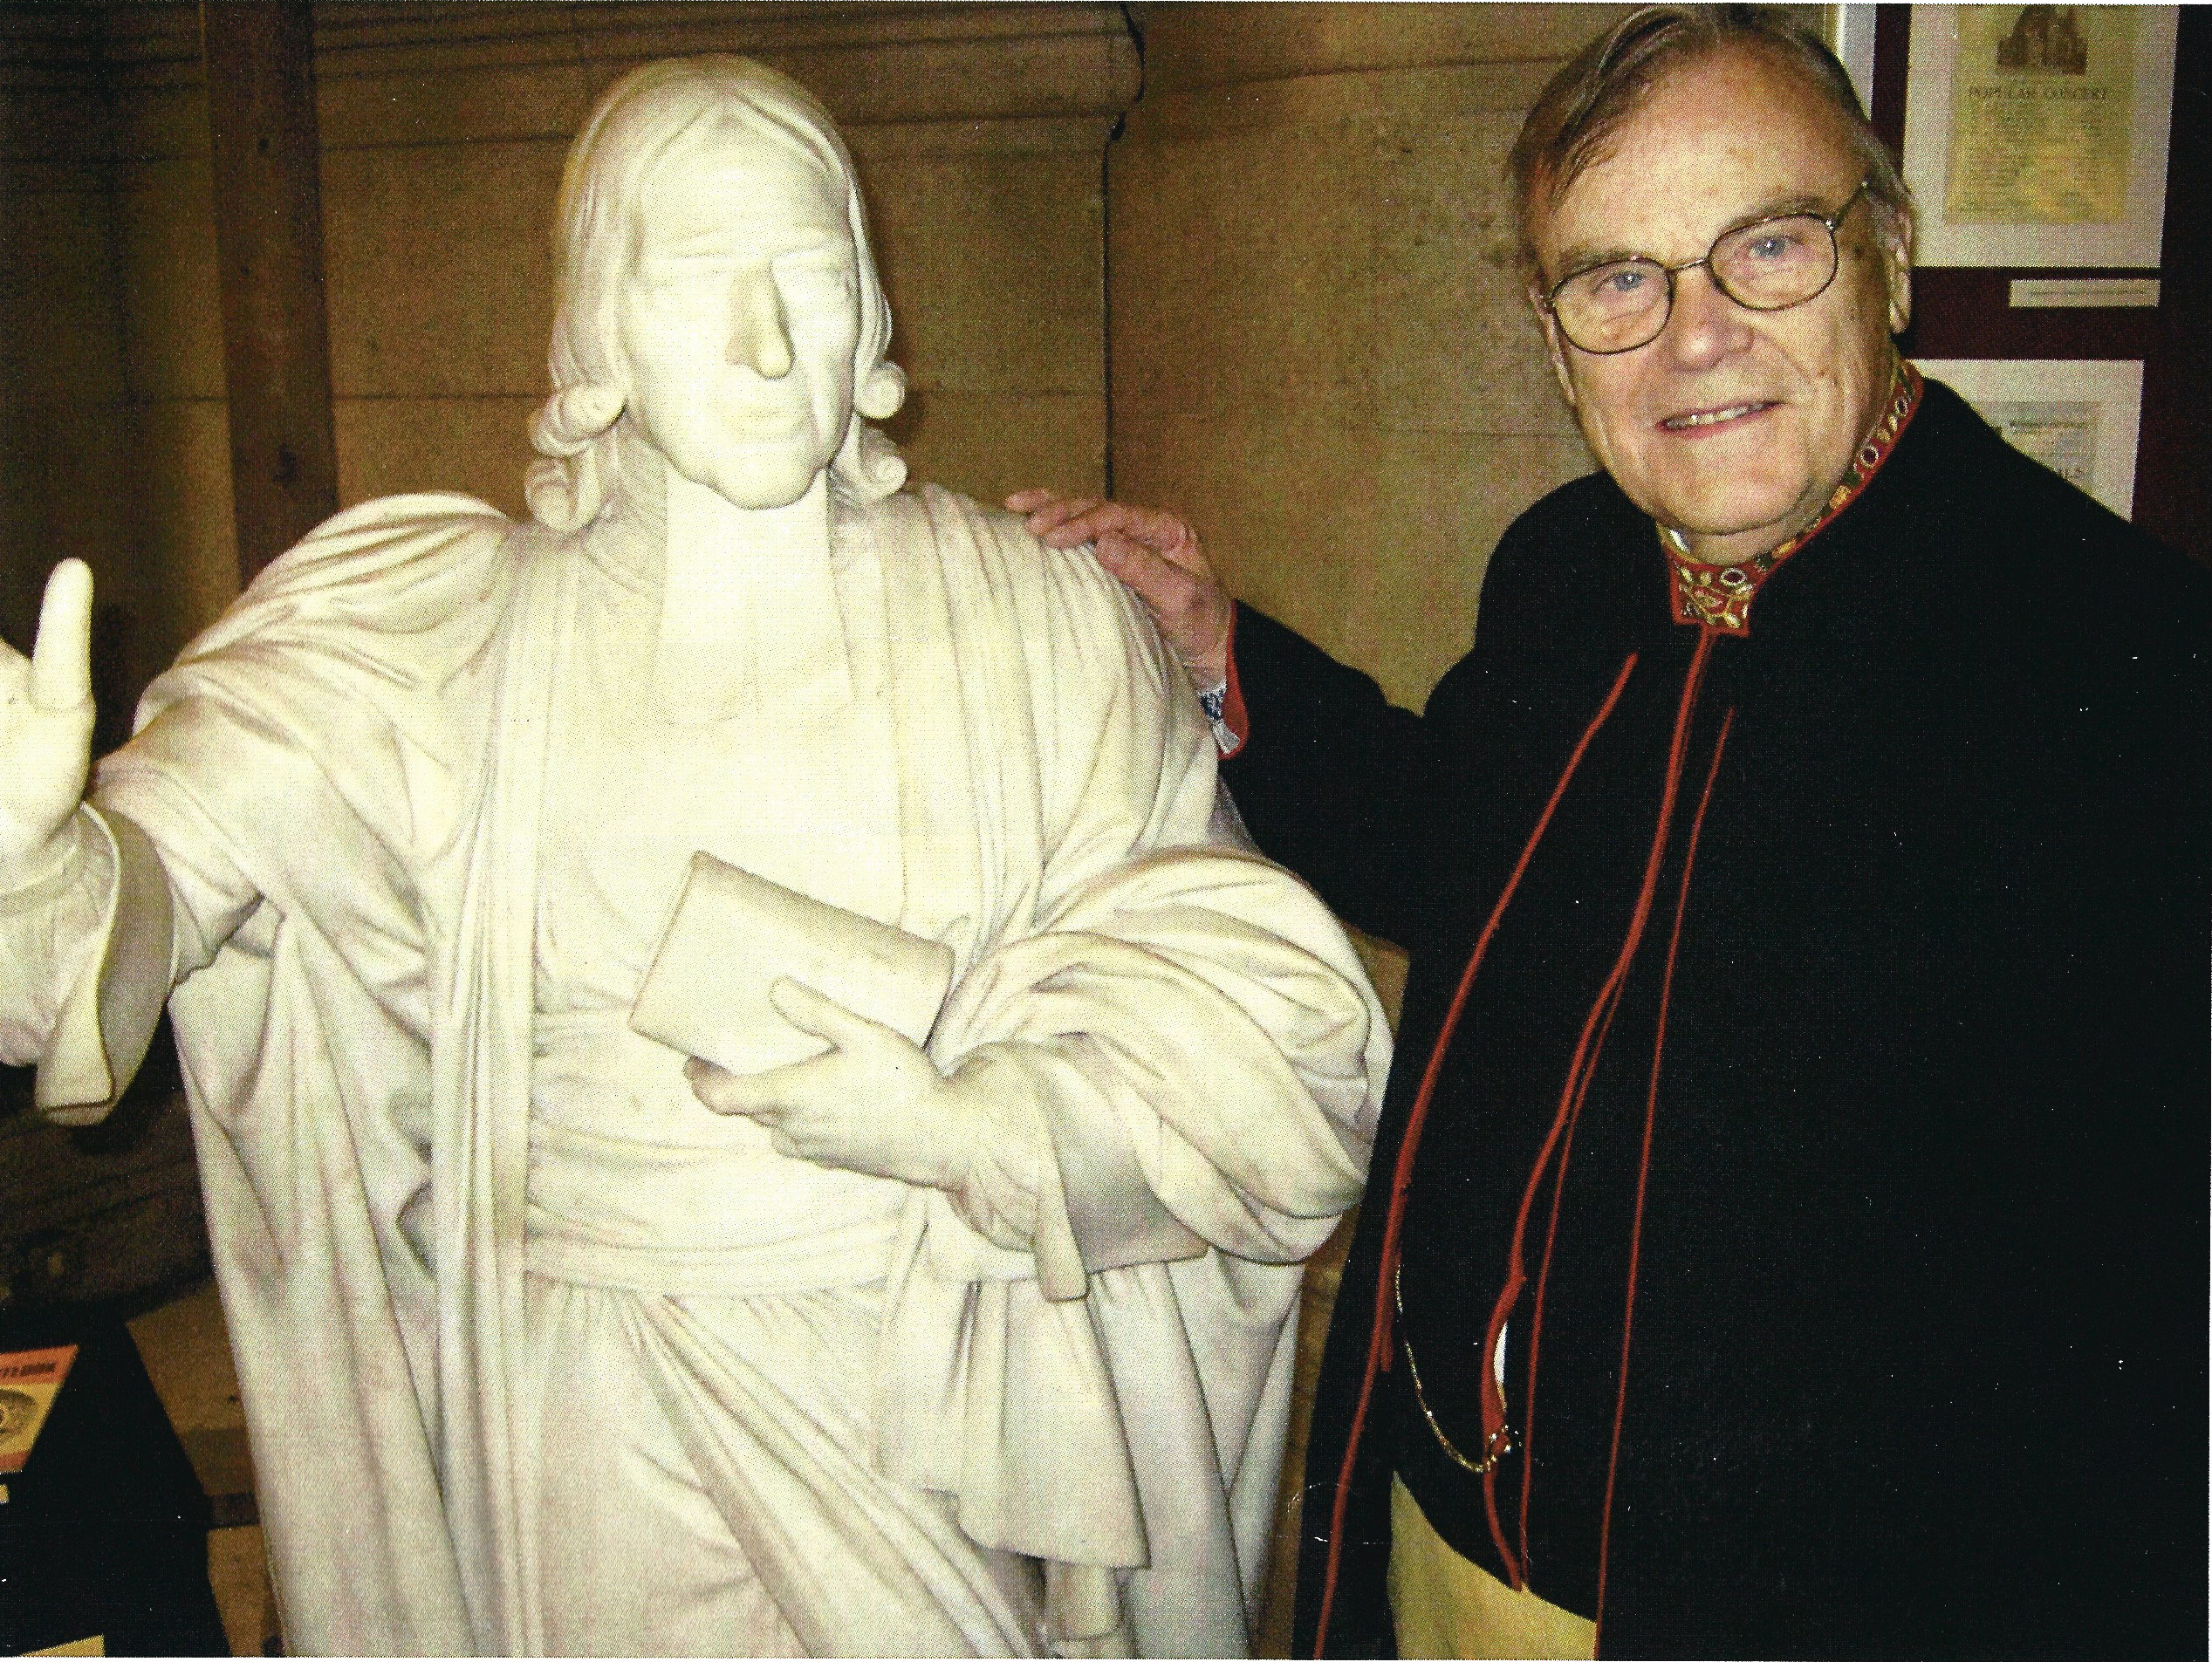 John med John Wesley London maj 2012